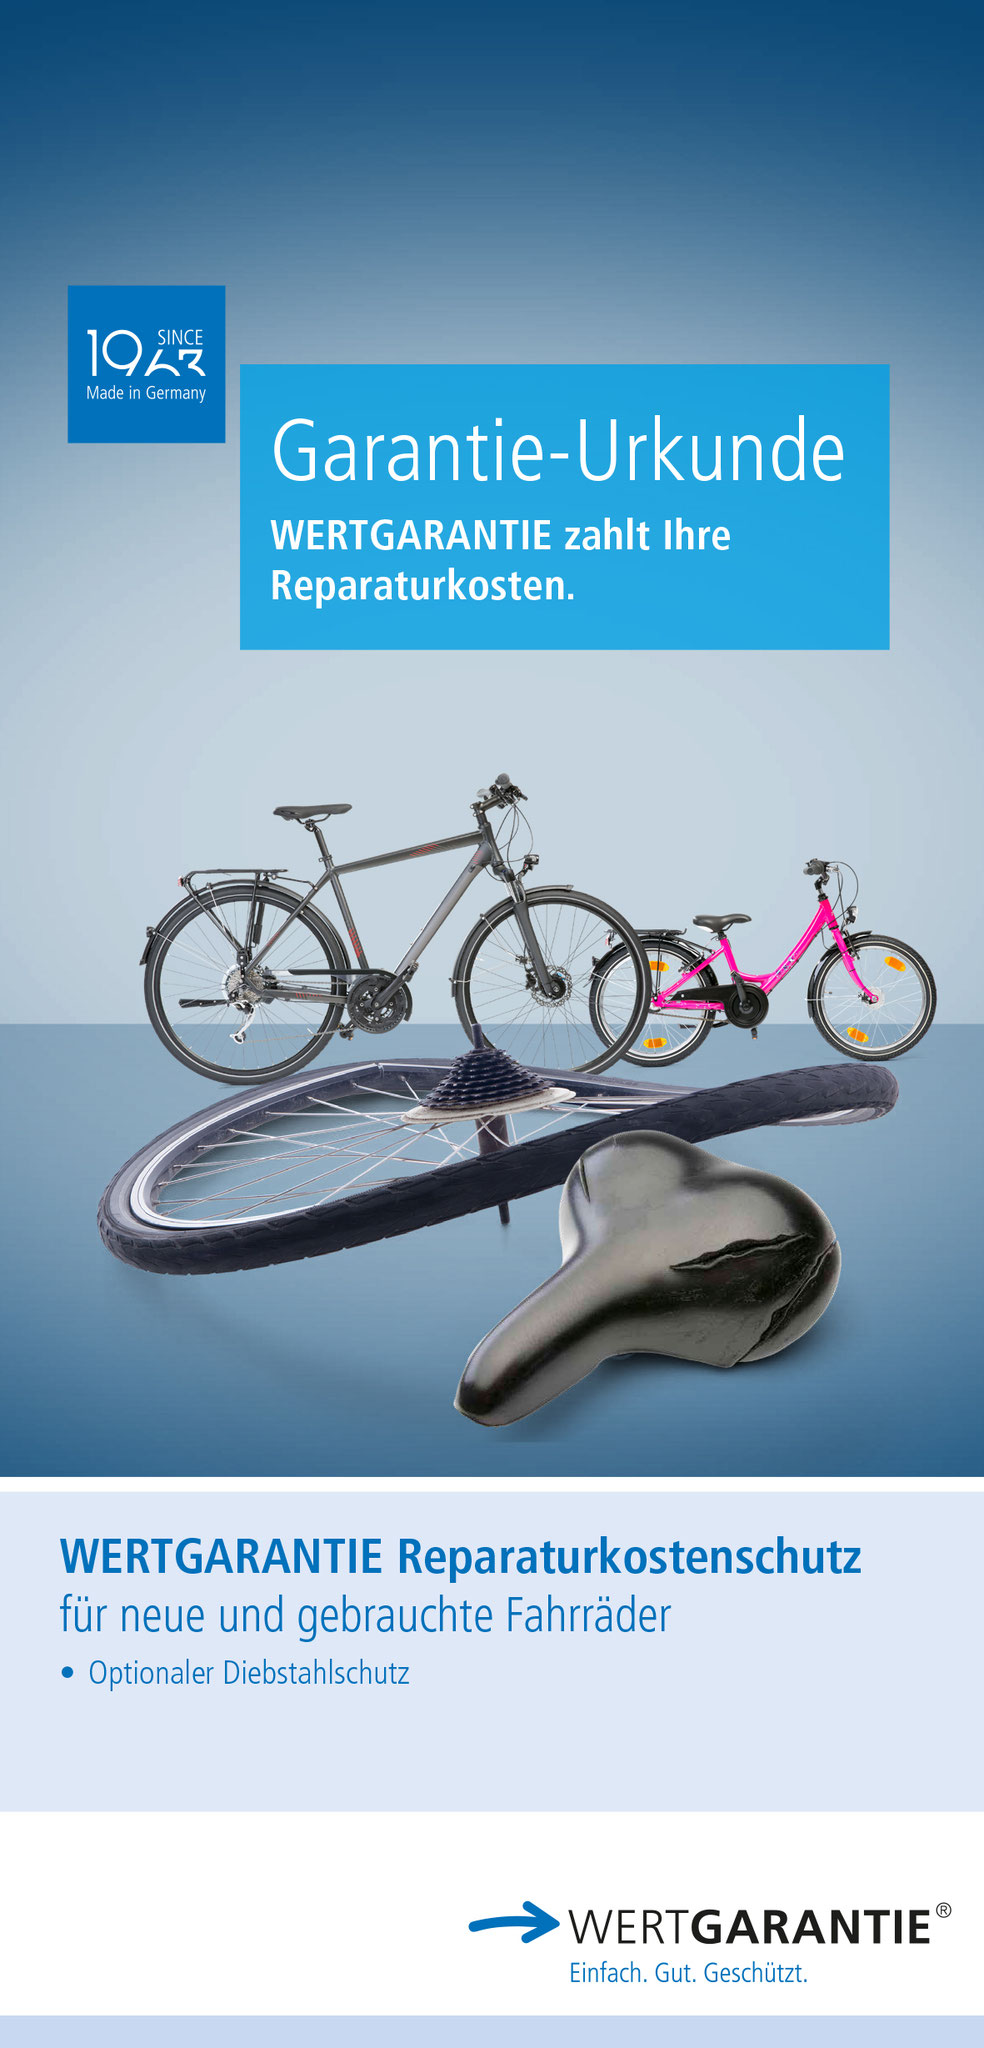 Zu den berechtigten Produkten gehören u.a. der neue, ausgezeichnete Komplettschutz E-Bikes/Pedelecs 2021 und der neue Reparaturkostenschutz Fahrrad 2021 mit optionalem Diebstahlschutz. Foto: Wertgarantie